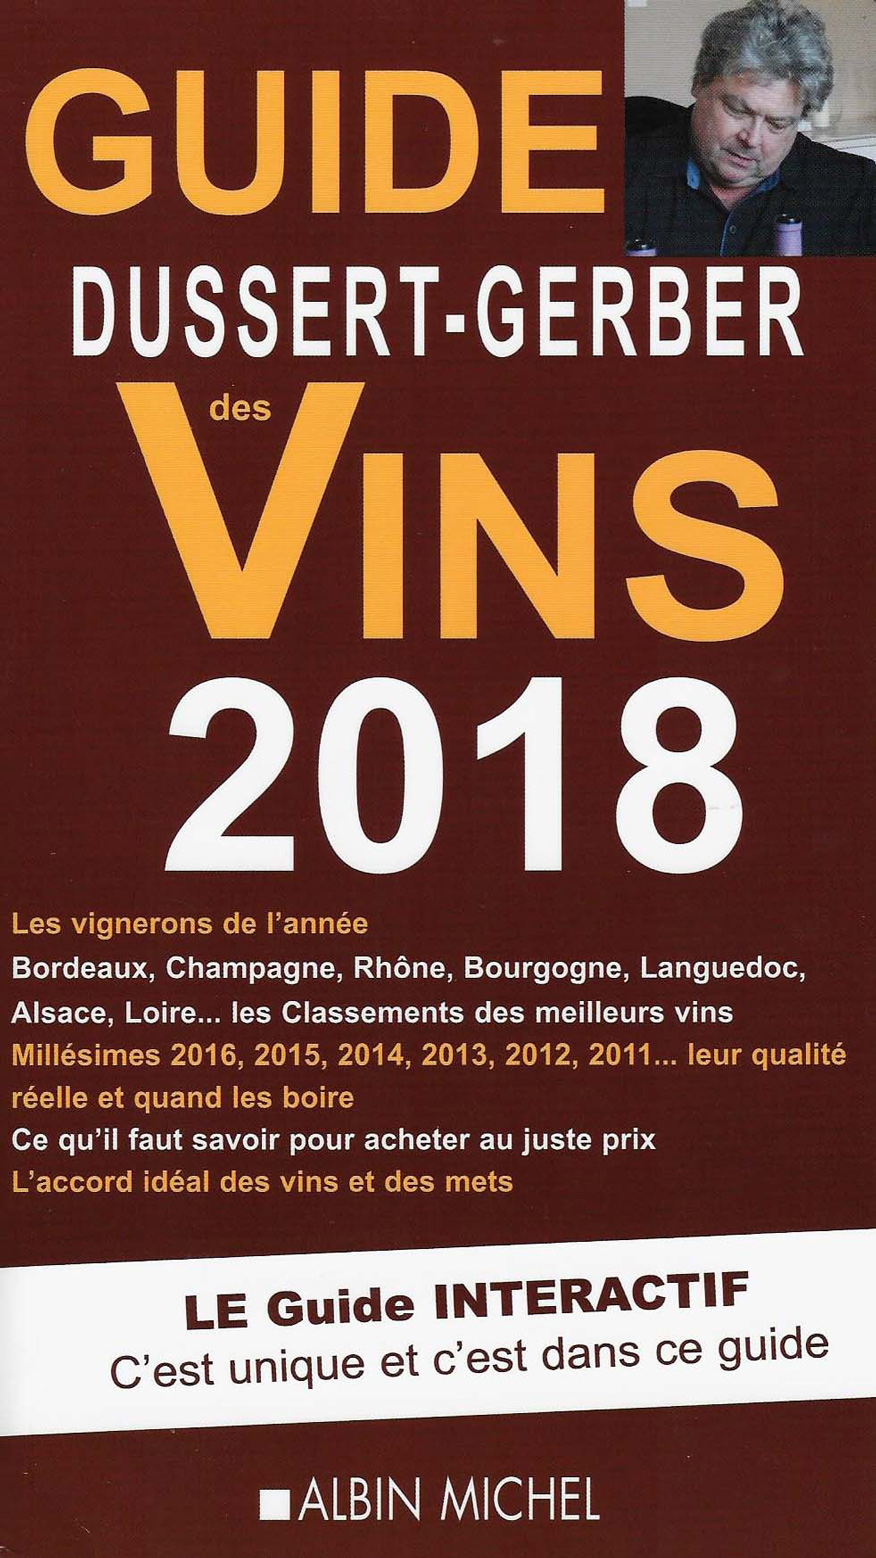 Guide DUSSERT-GERBER des vins 2018